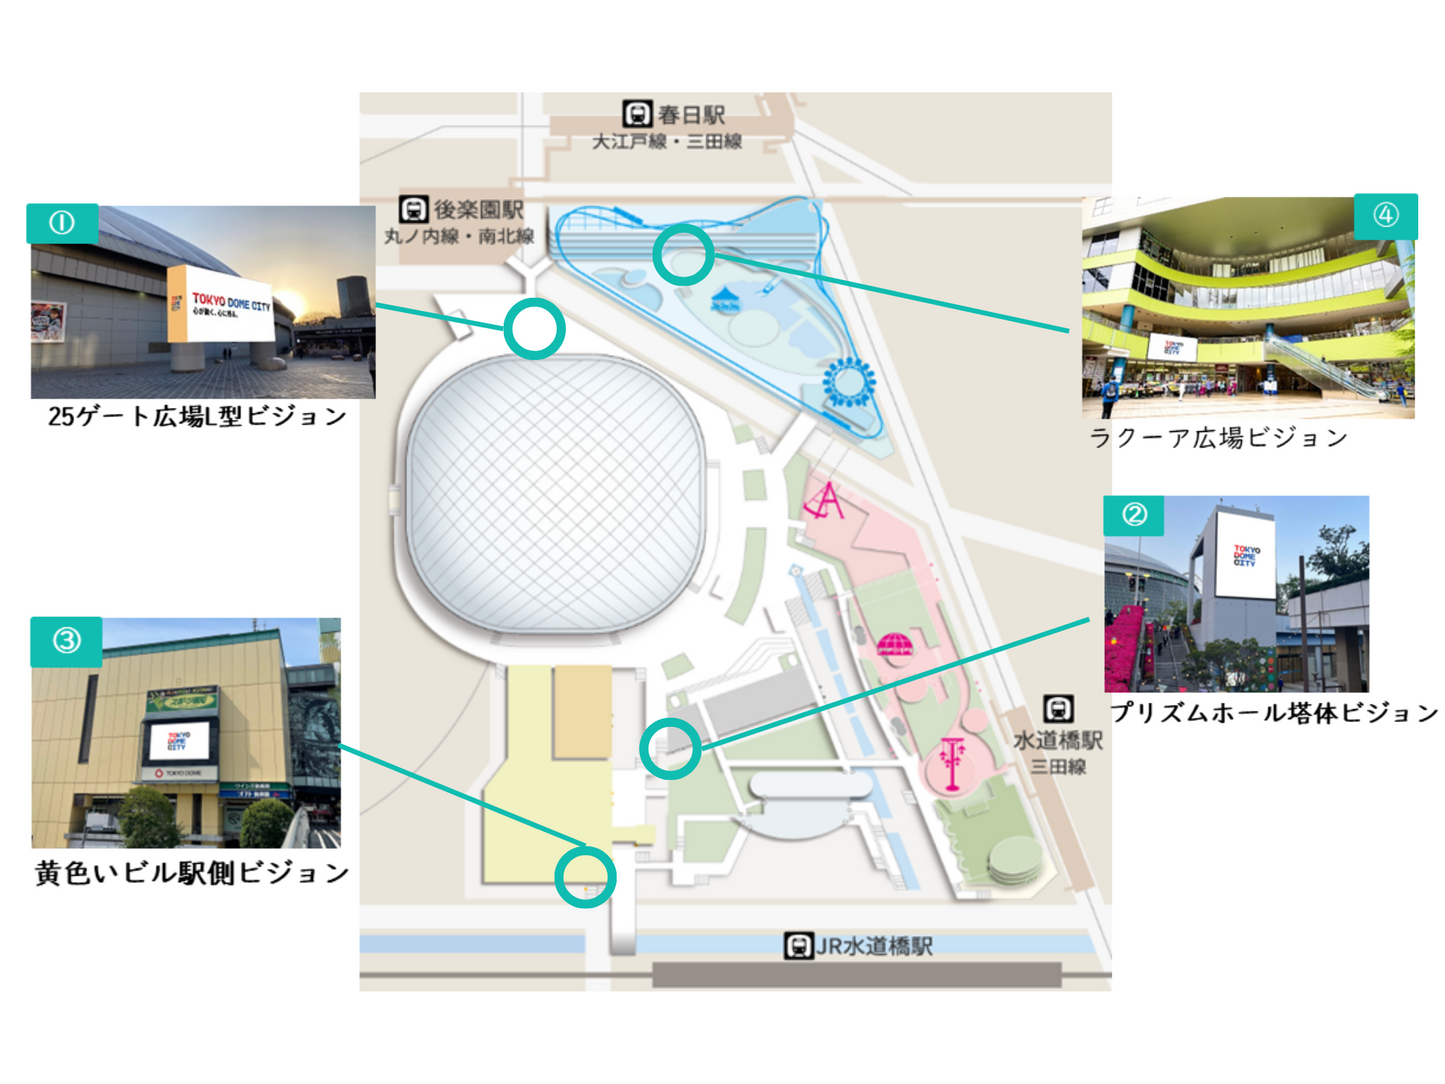 东京圆顶城市幻象基本套装开放laaca Square Vision